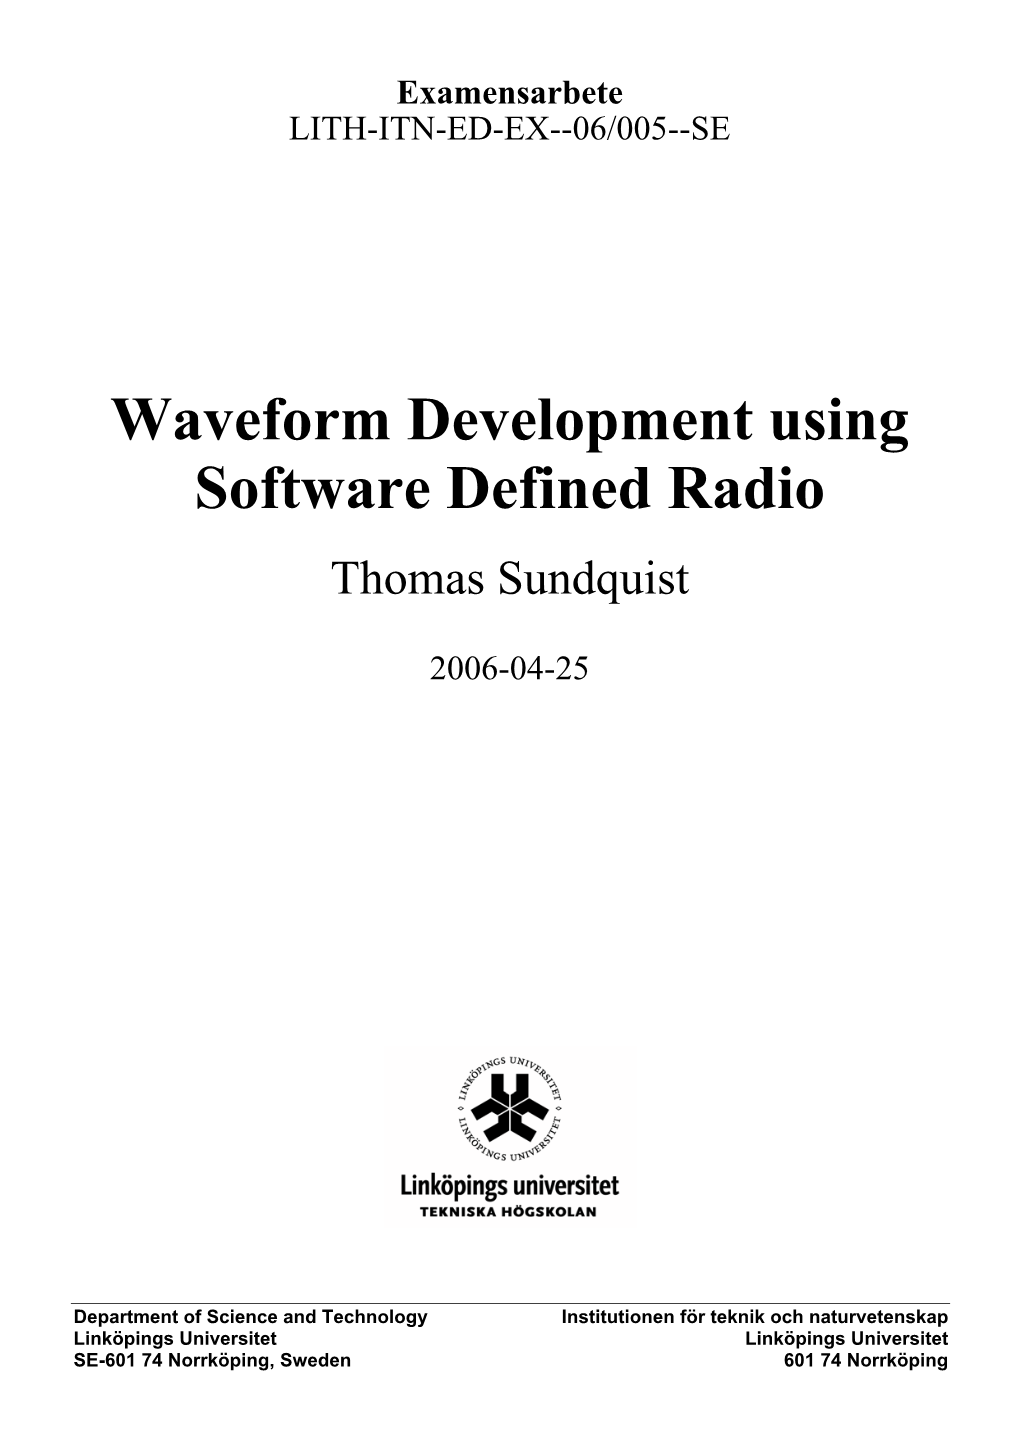 Waveform Development Using Software Defined Radio